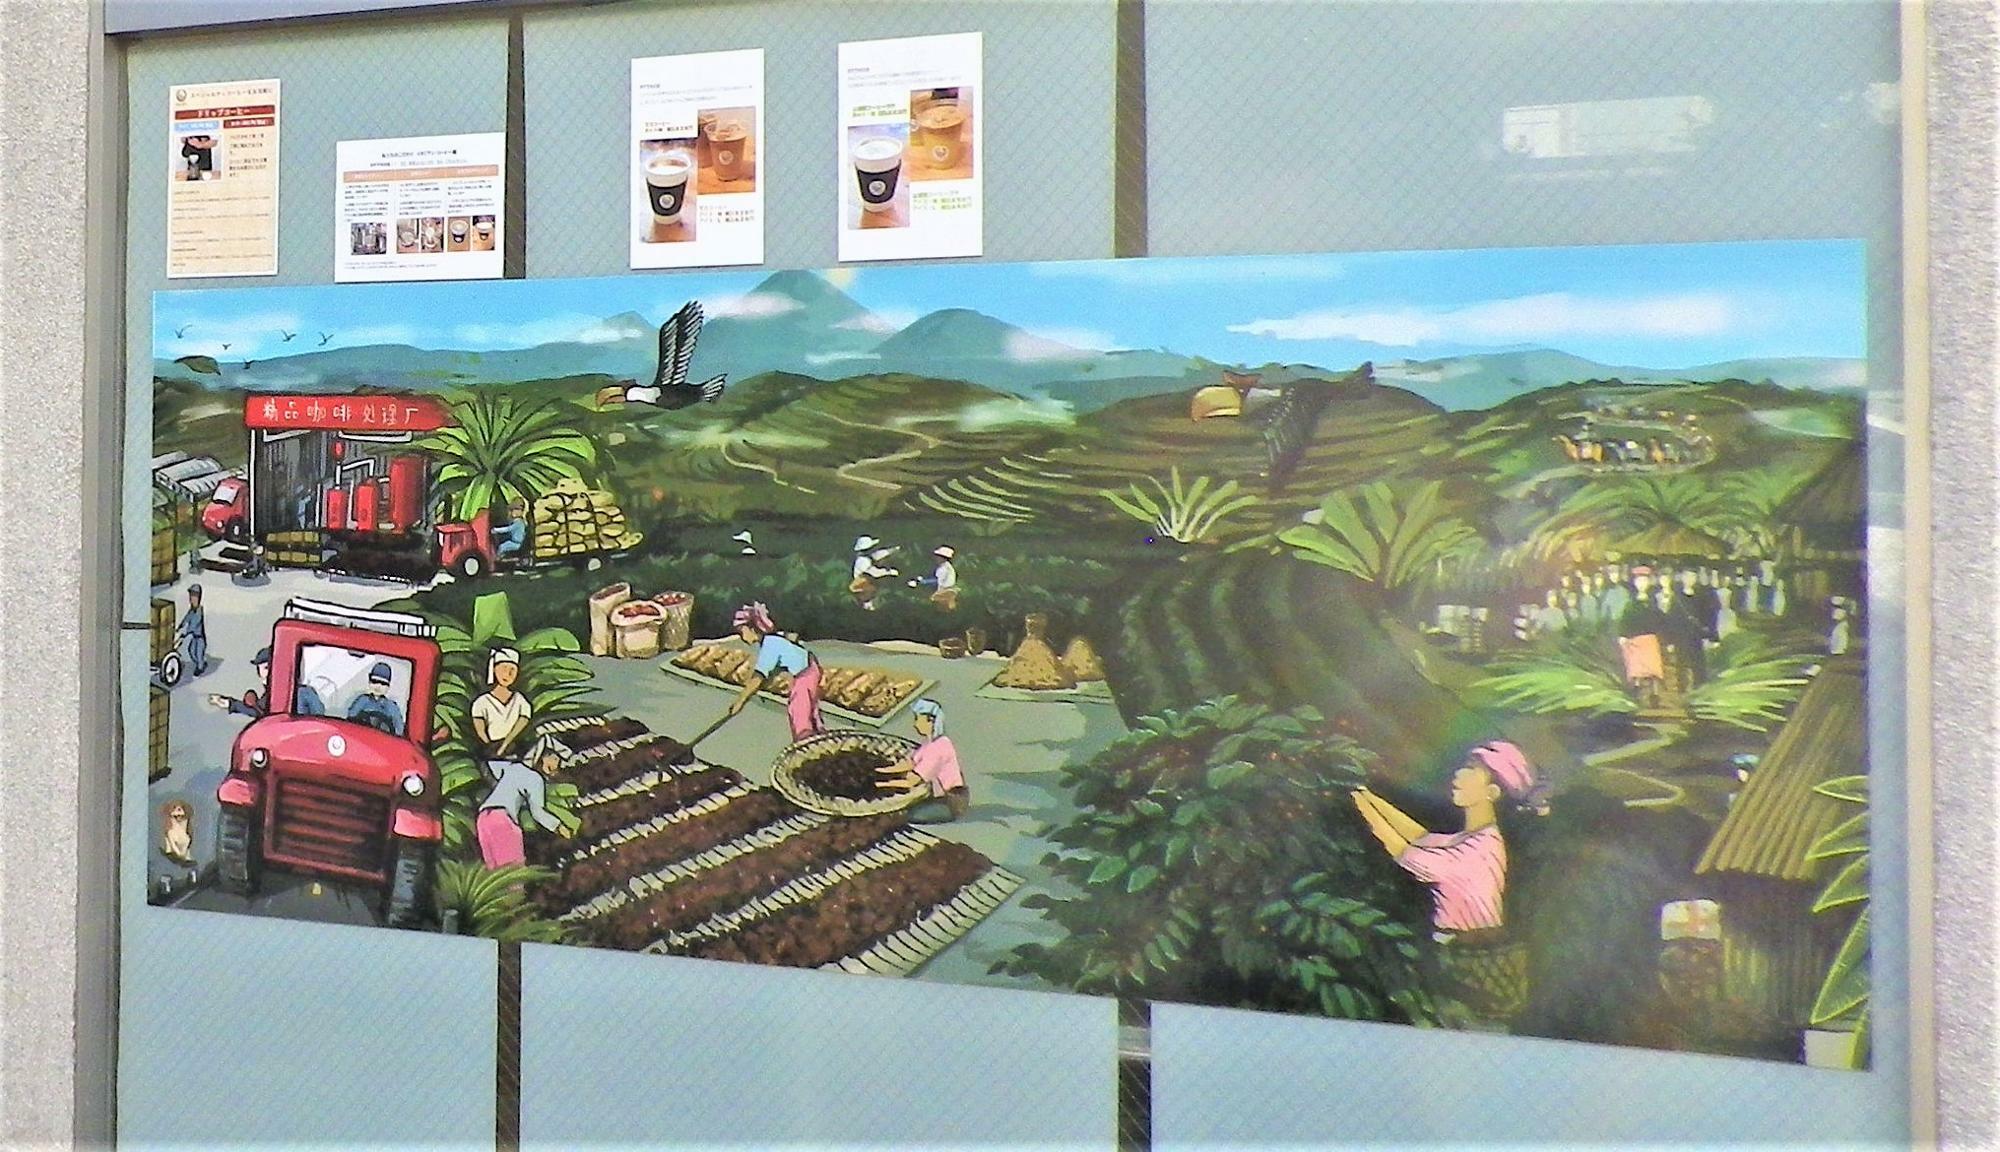 お店のショーウィンドゥには、コーヒー農園のイラストが描かれていました。